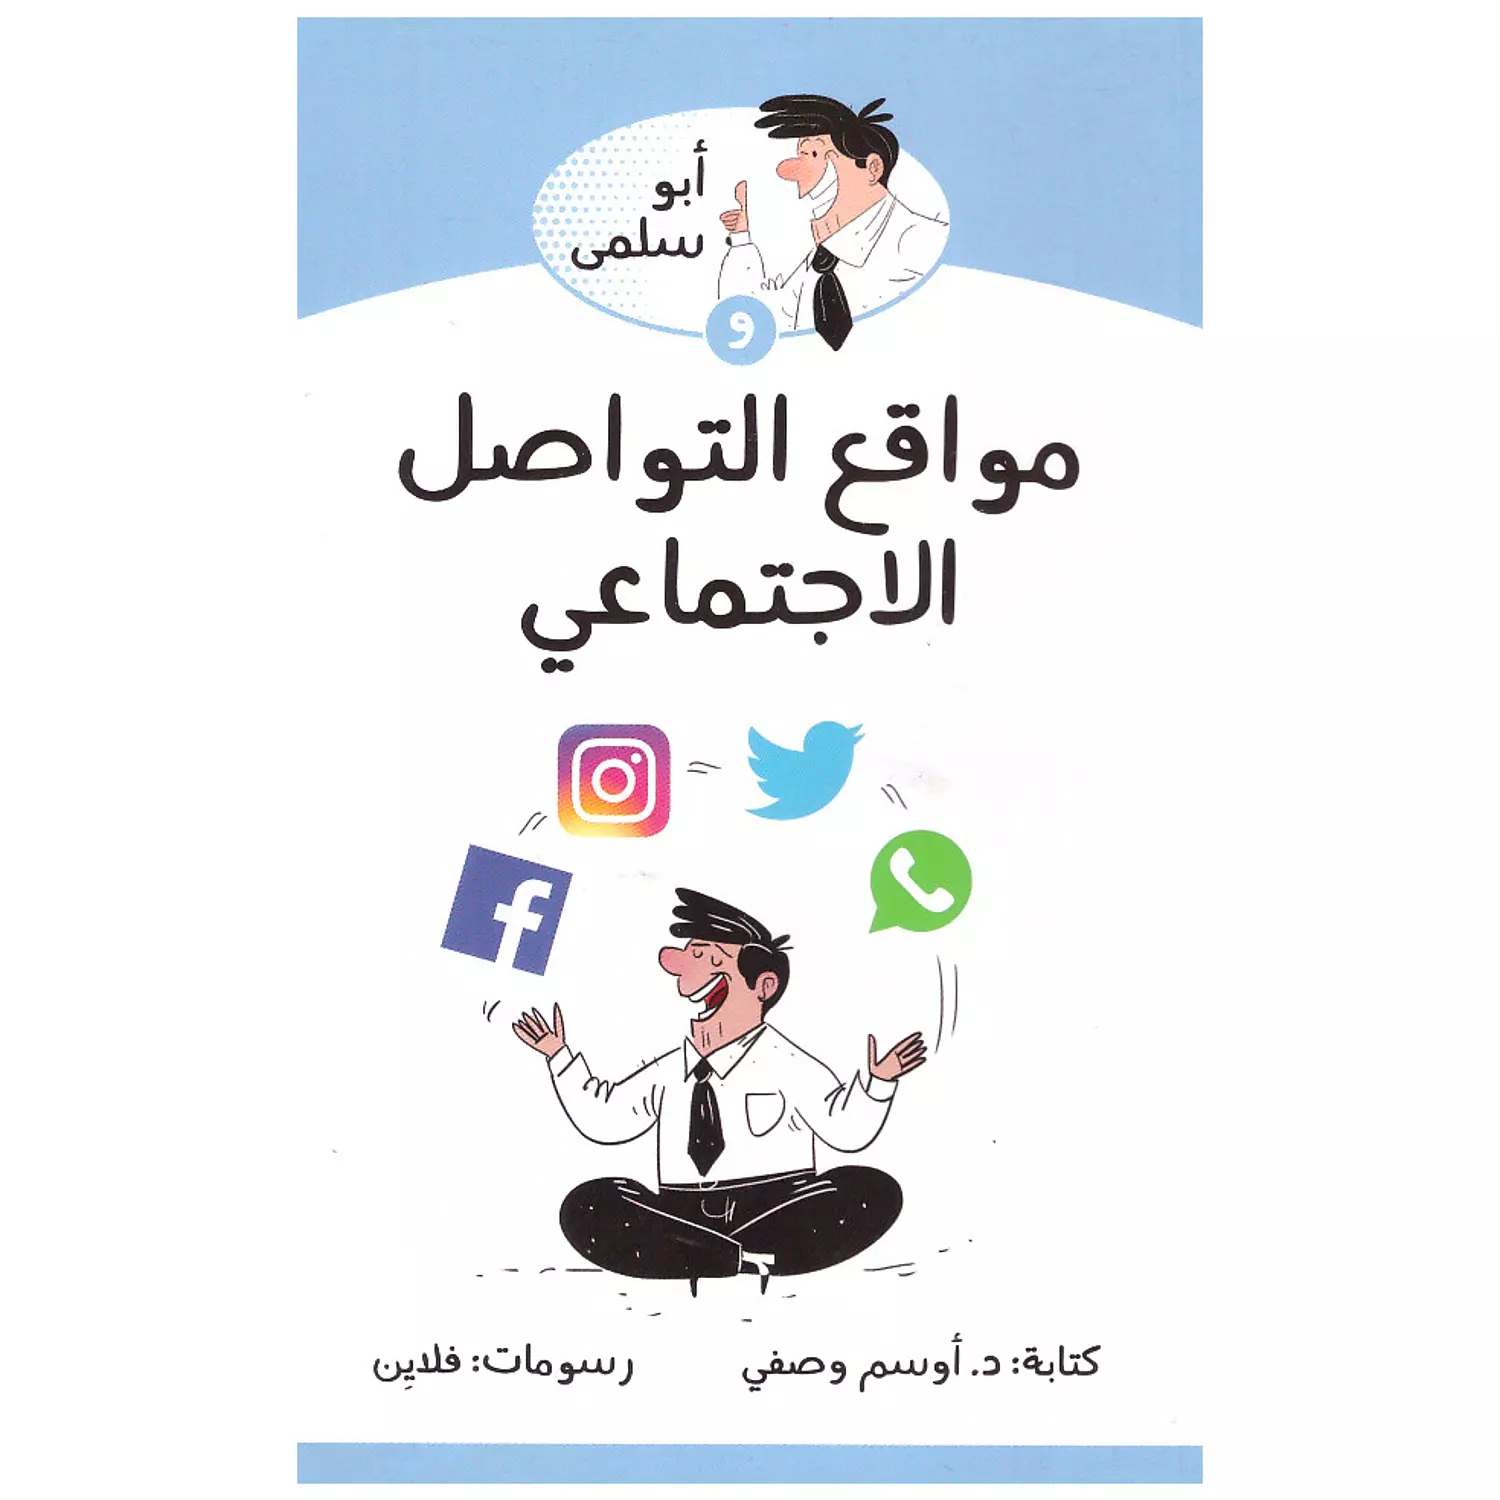 ابو سلمى و مواقع التواصل الاجتماعي hover image